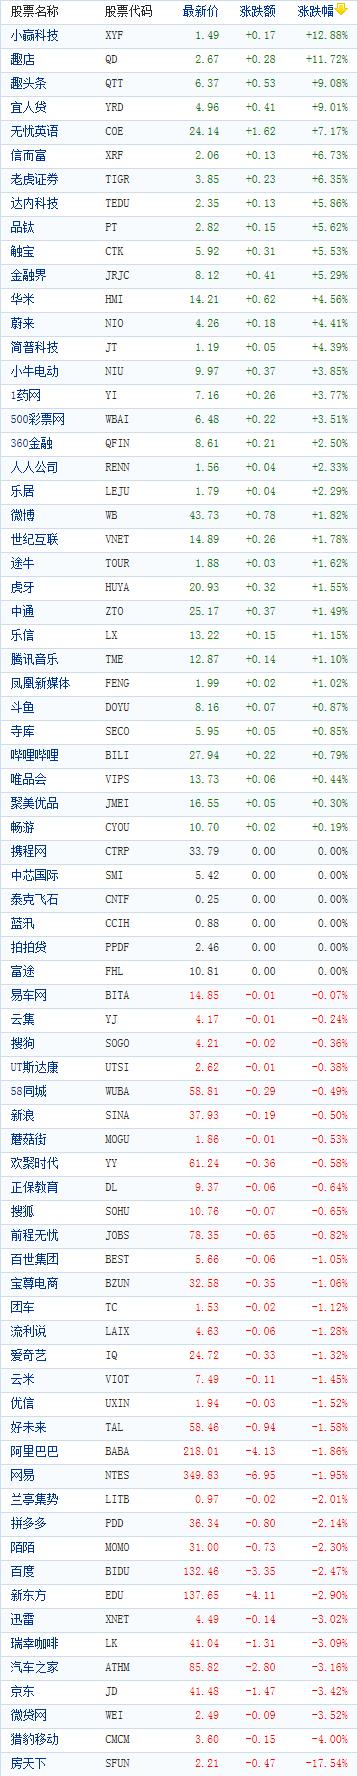 中国概念股周四收盘涨跌互现 趣店逆势涨近12%